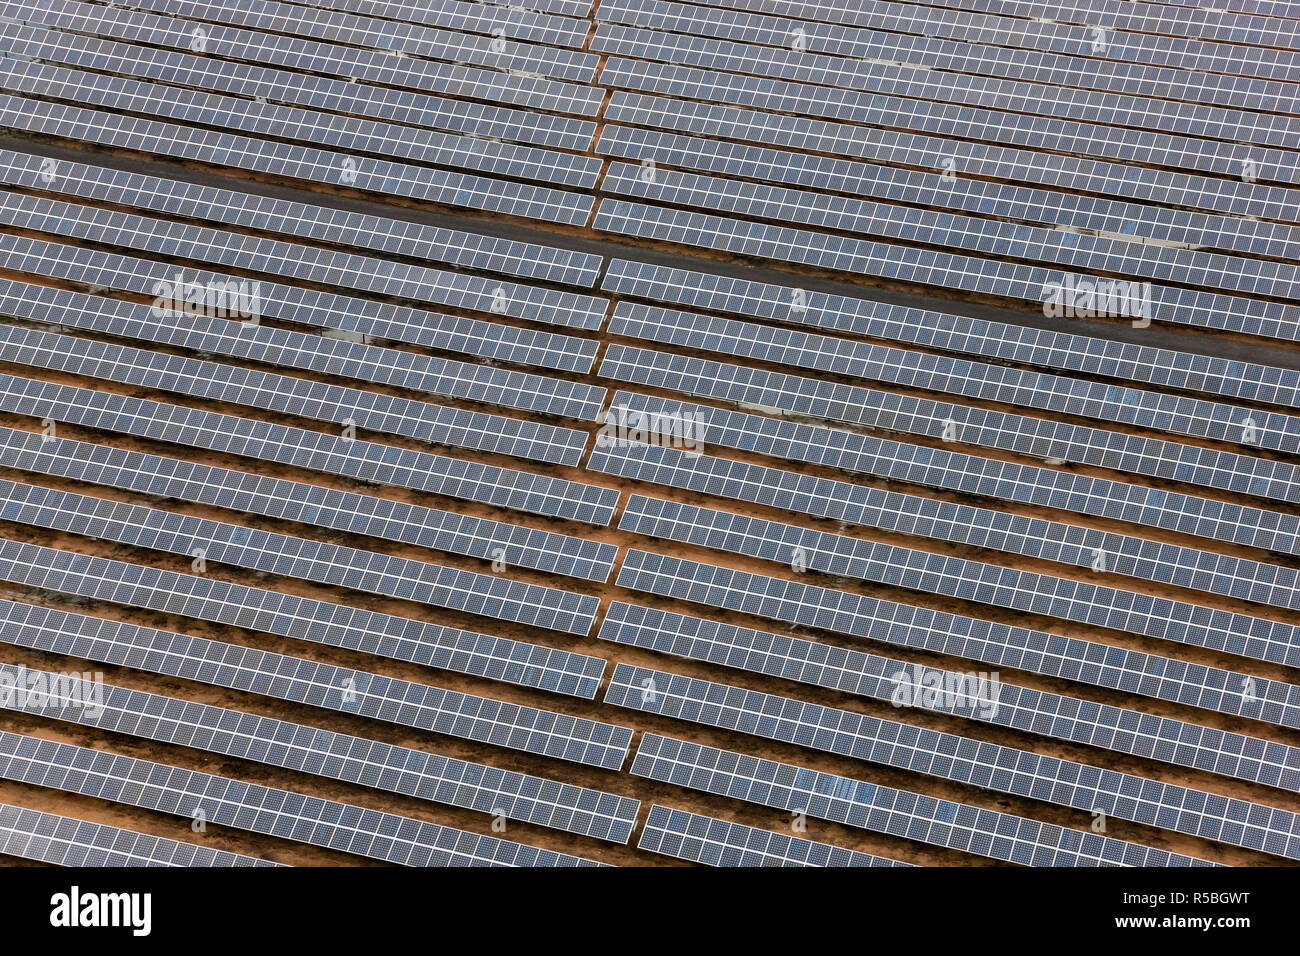 Vue aérienne de panneaux solaires la Province de Huelva, Espagne Banque D'Images